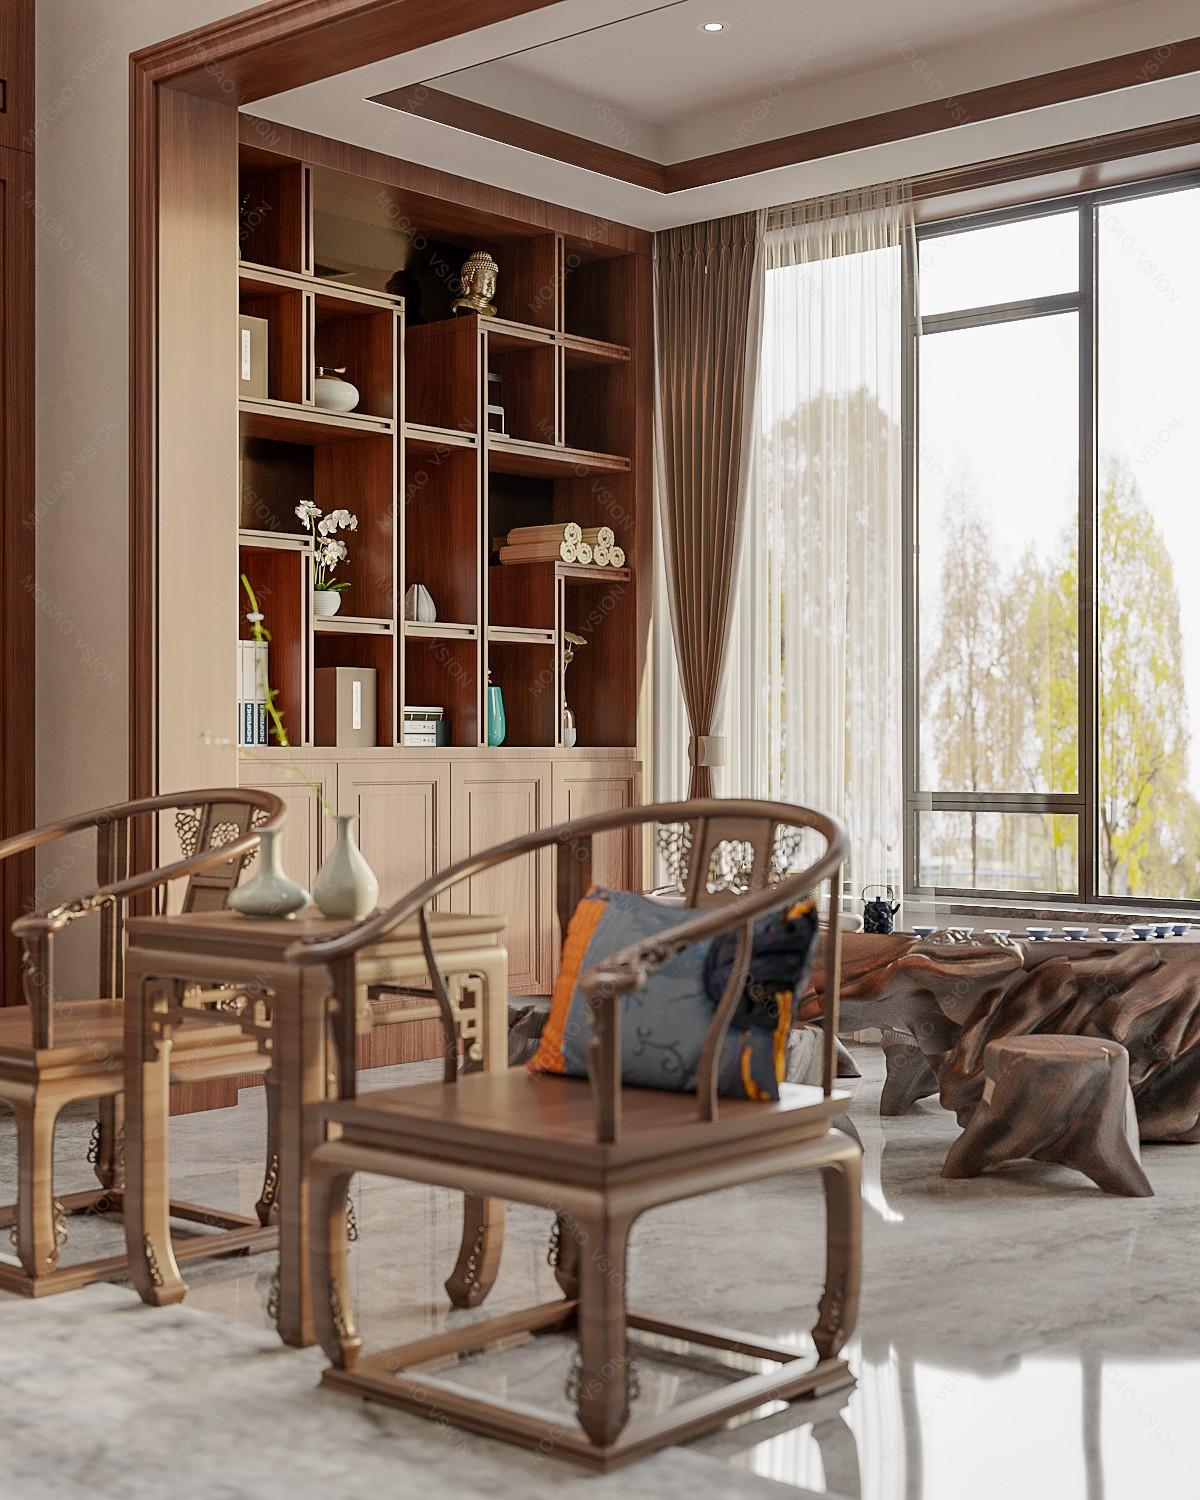 新中式客厅红木家俱 – 设计本装修效果图